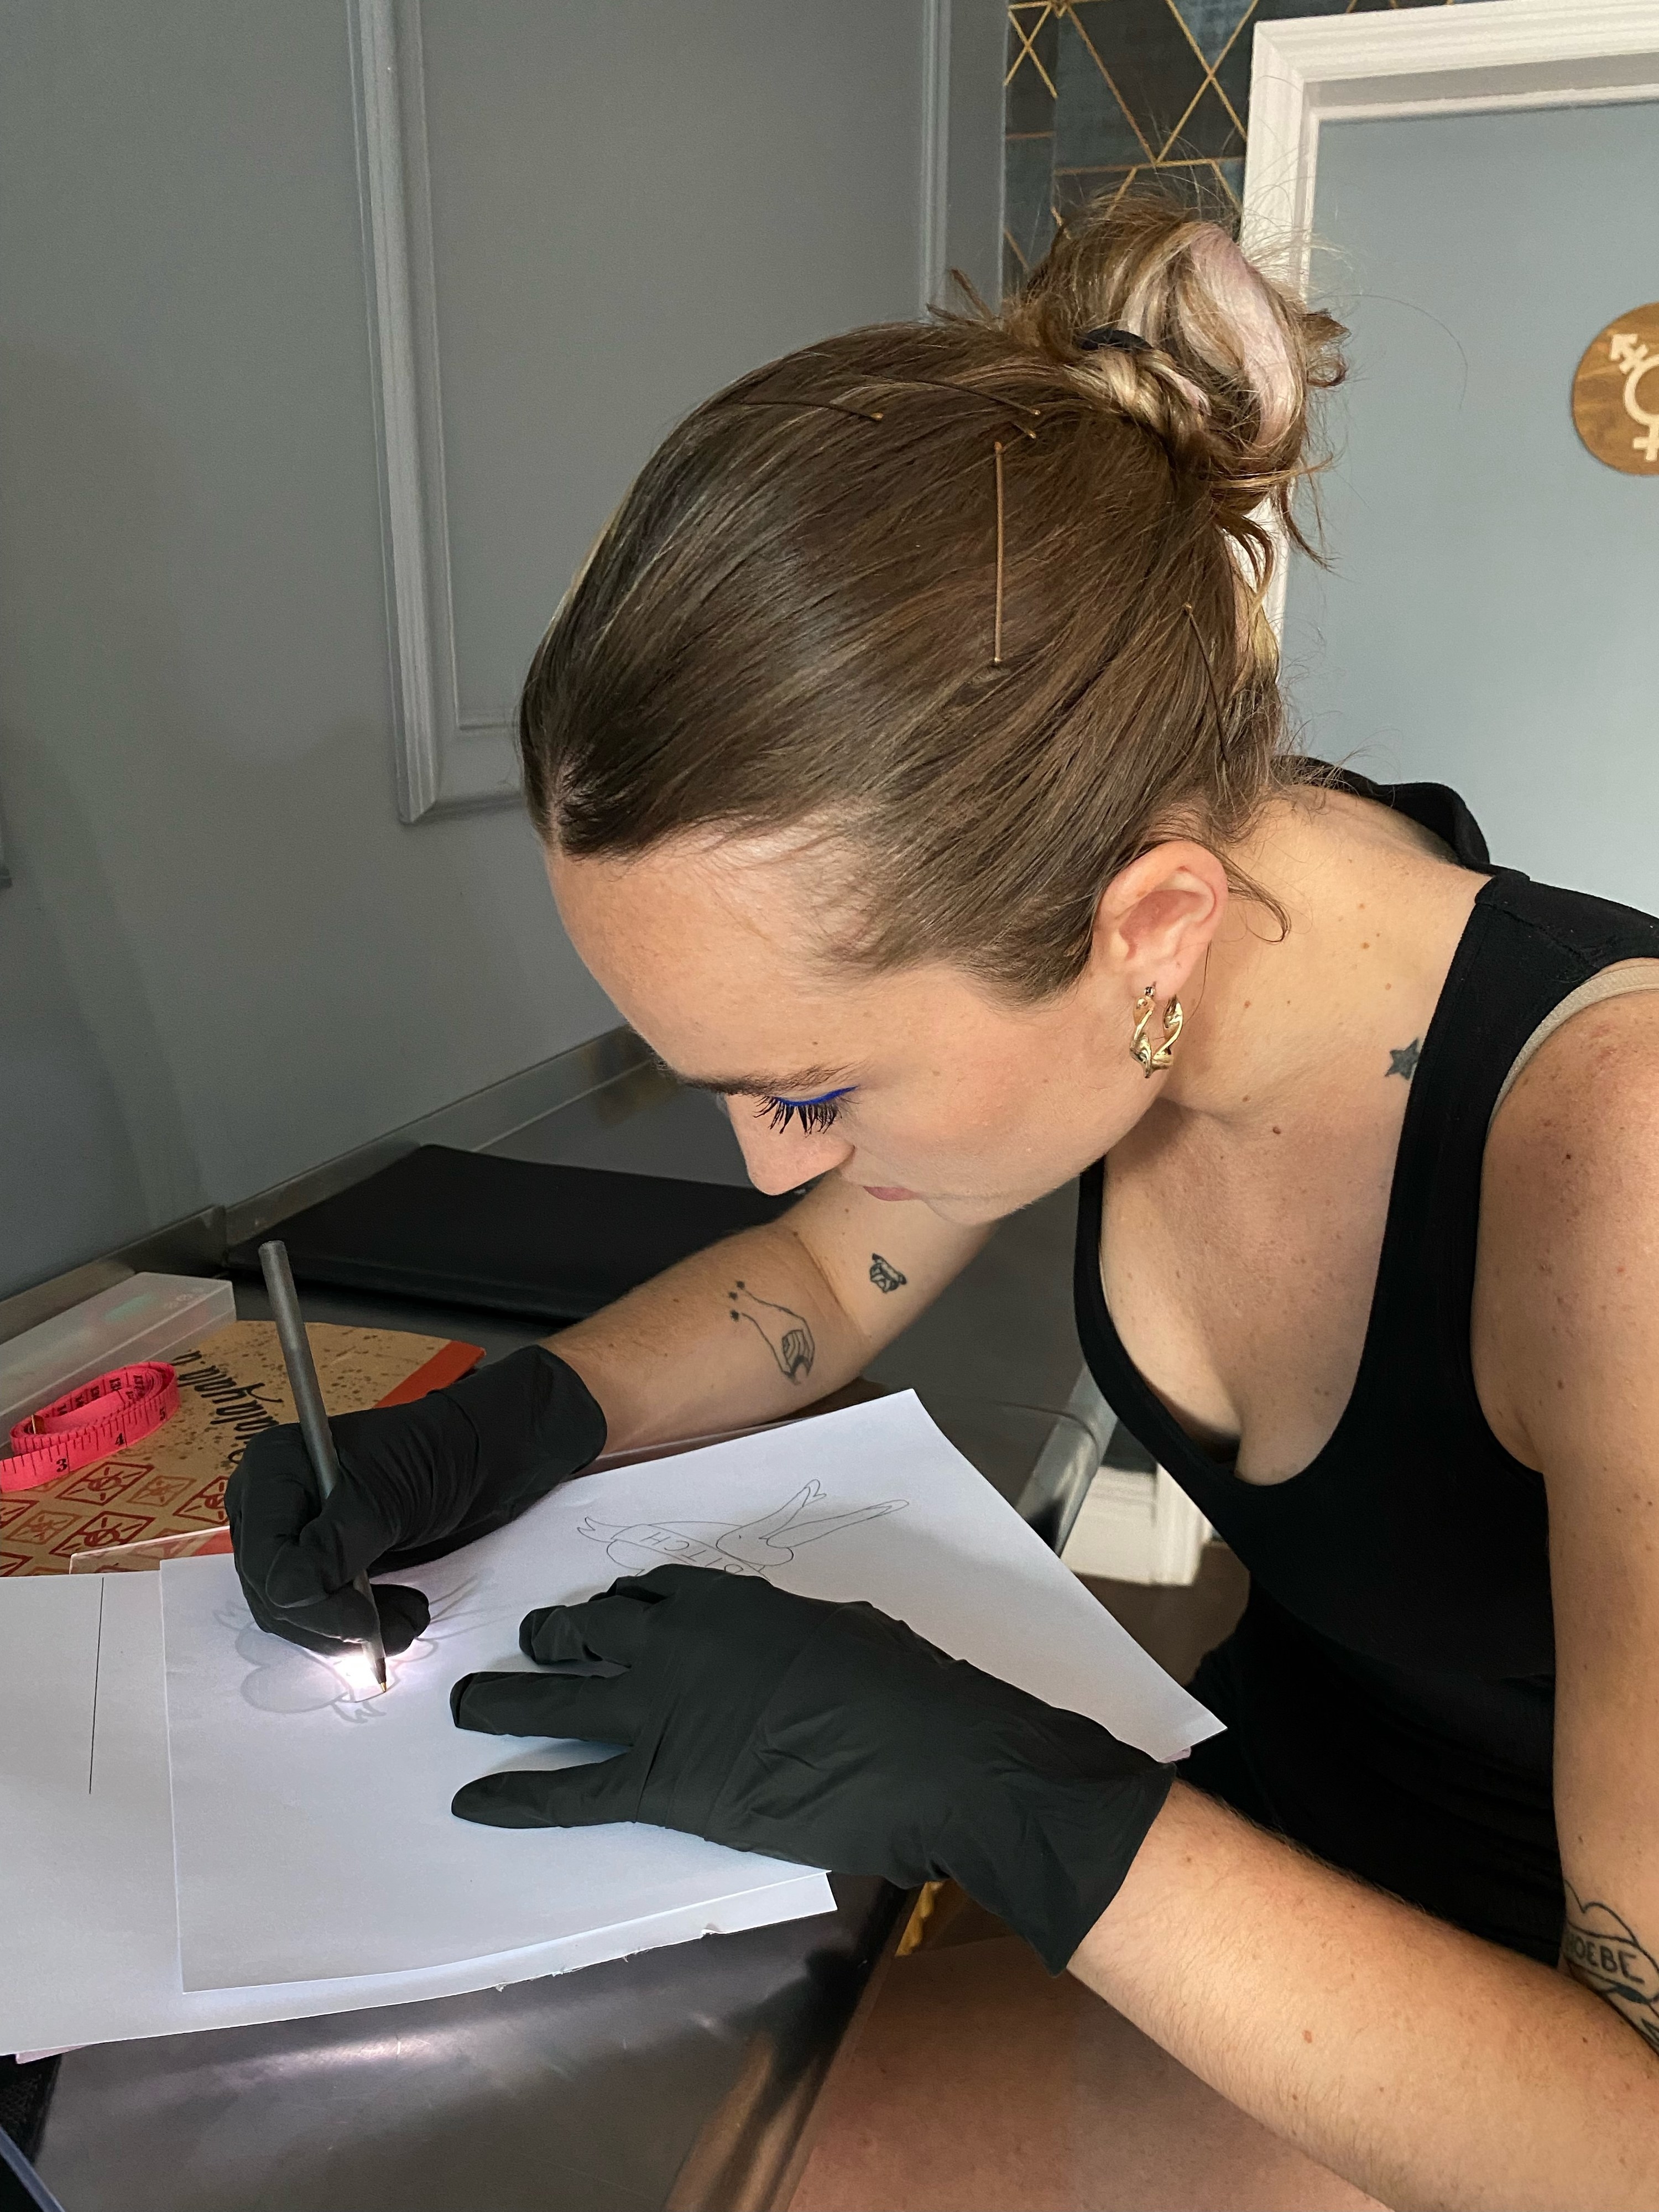 A tattoo apprentice drawing a tattoo